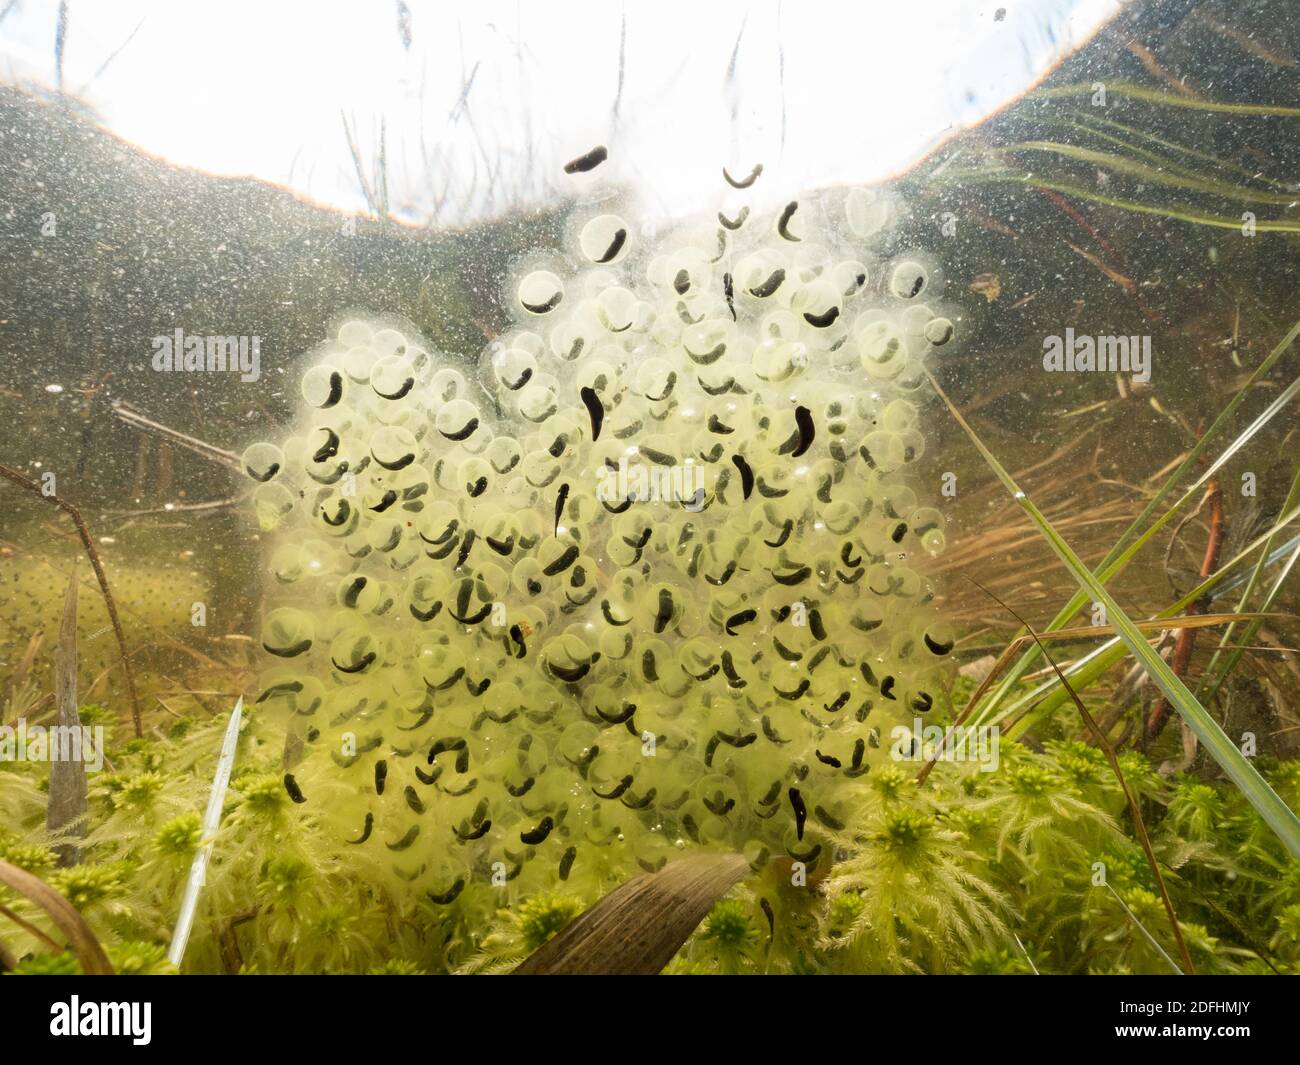 Moor frog eggs underwater Stock Photo